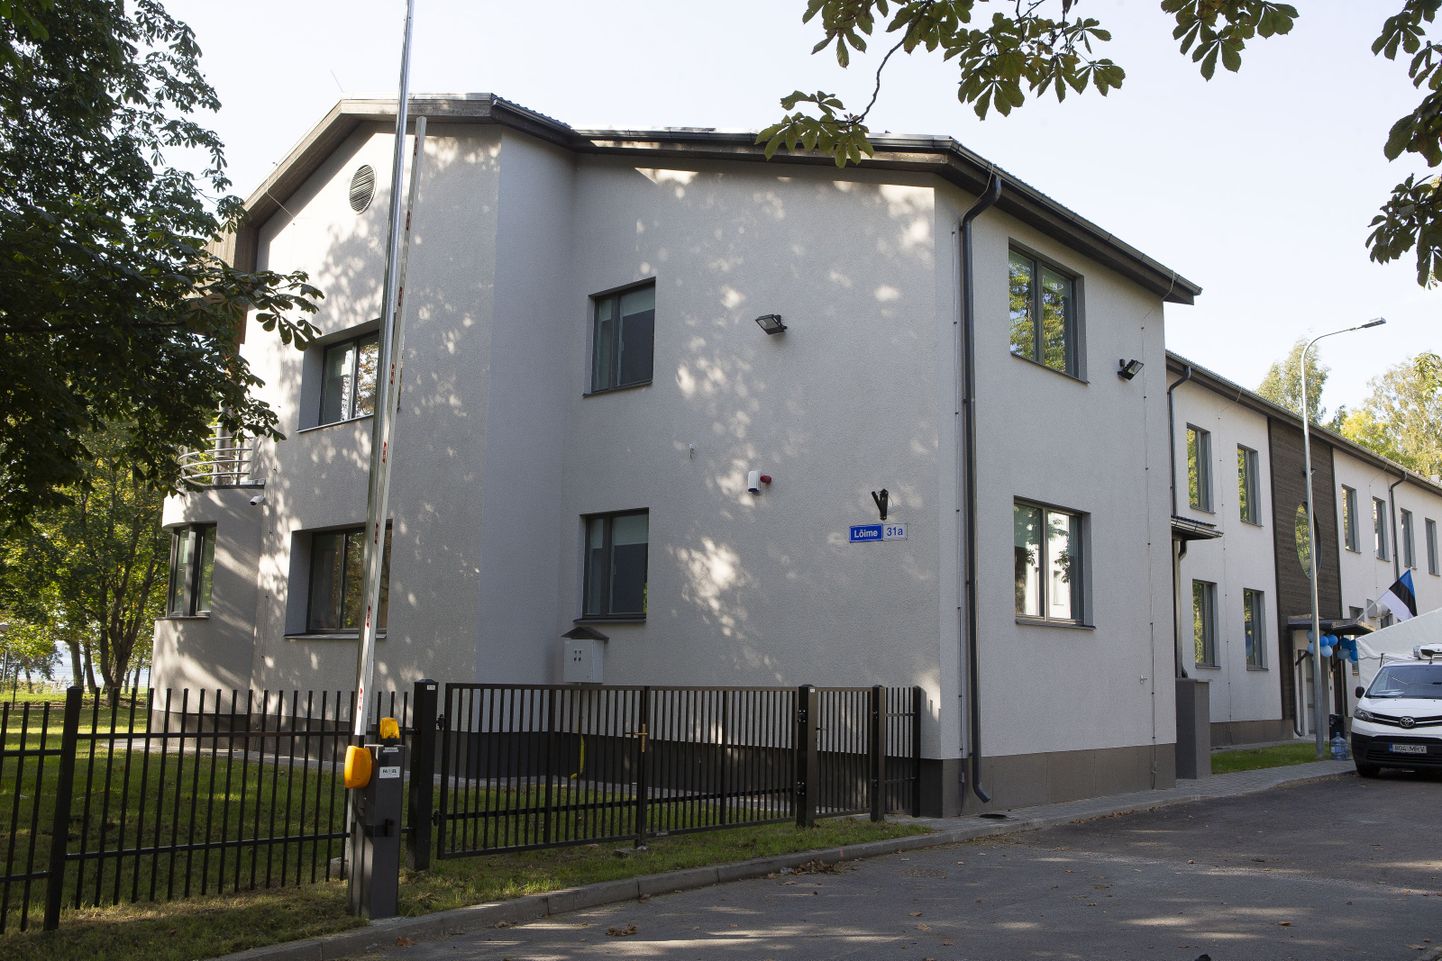 24 сентября после капитального ремонта открылся опорный дом Таллиннского центра душевного здоровья на Штромке (ул. Лыйме, 31а).